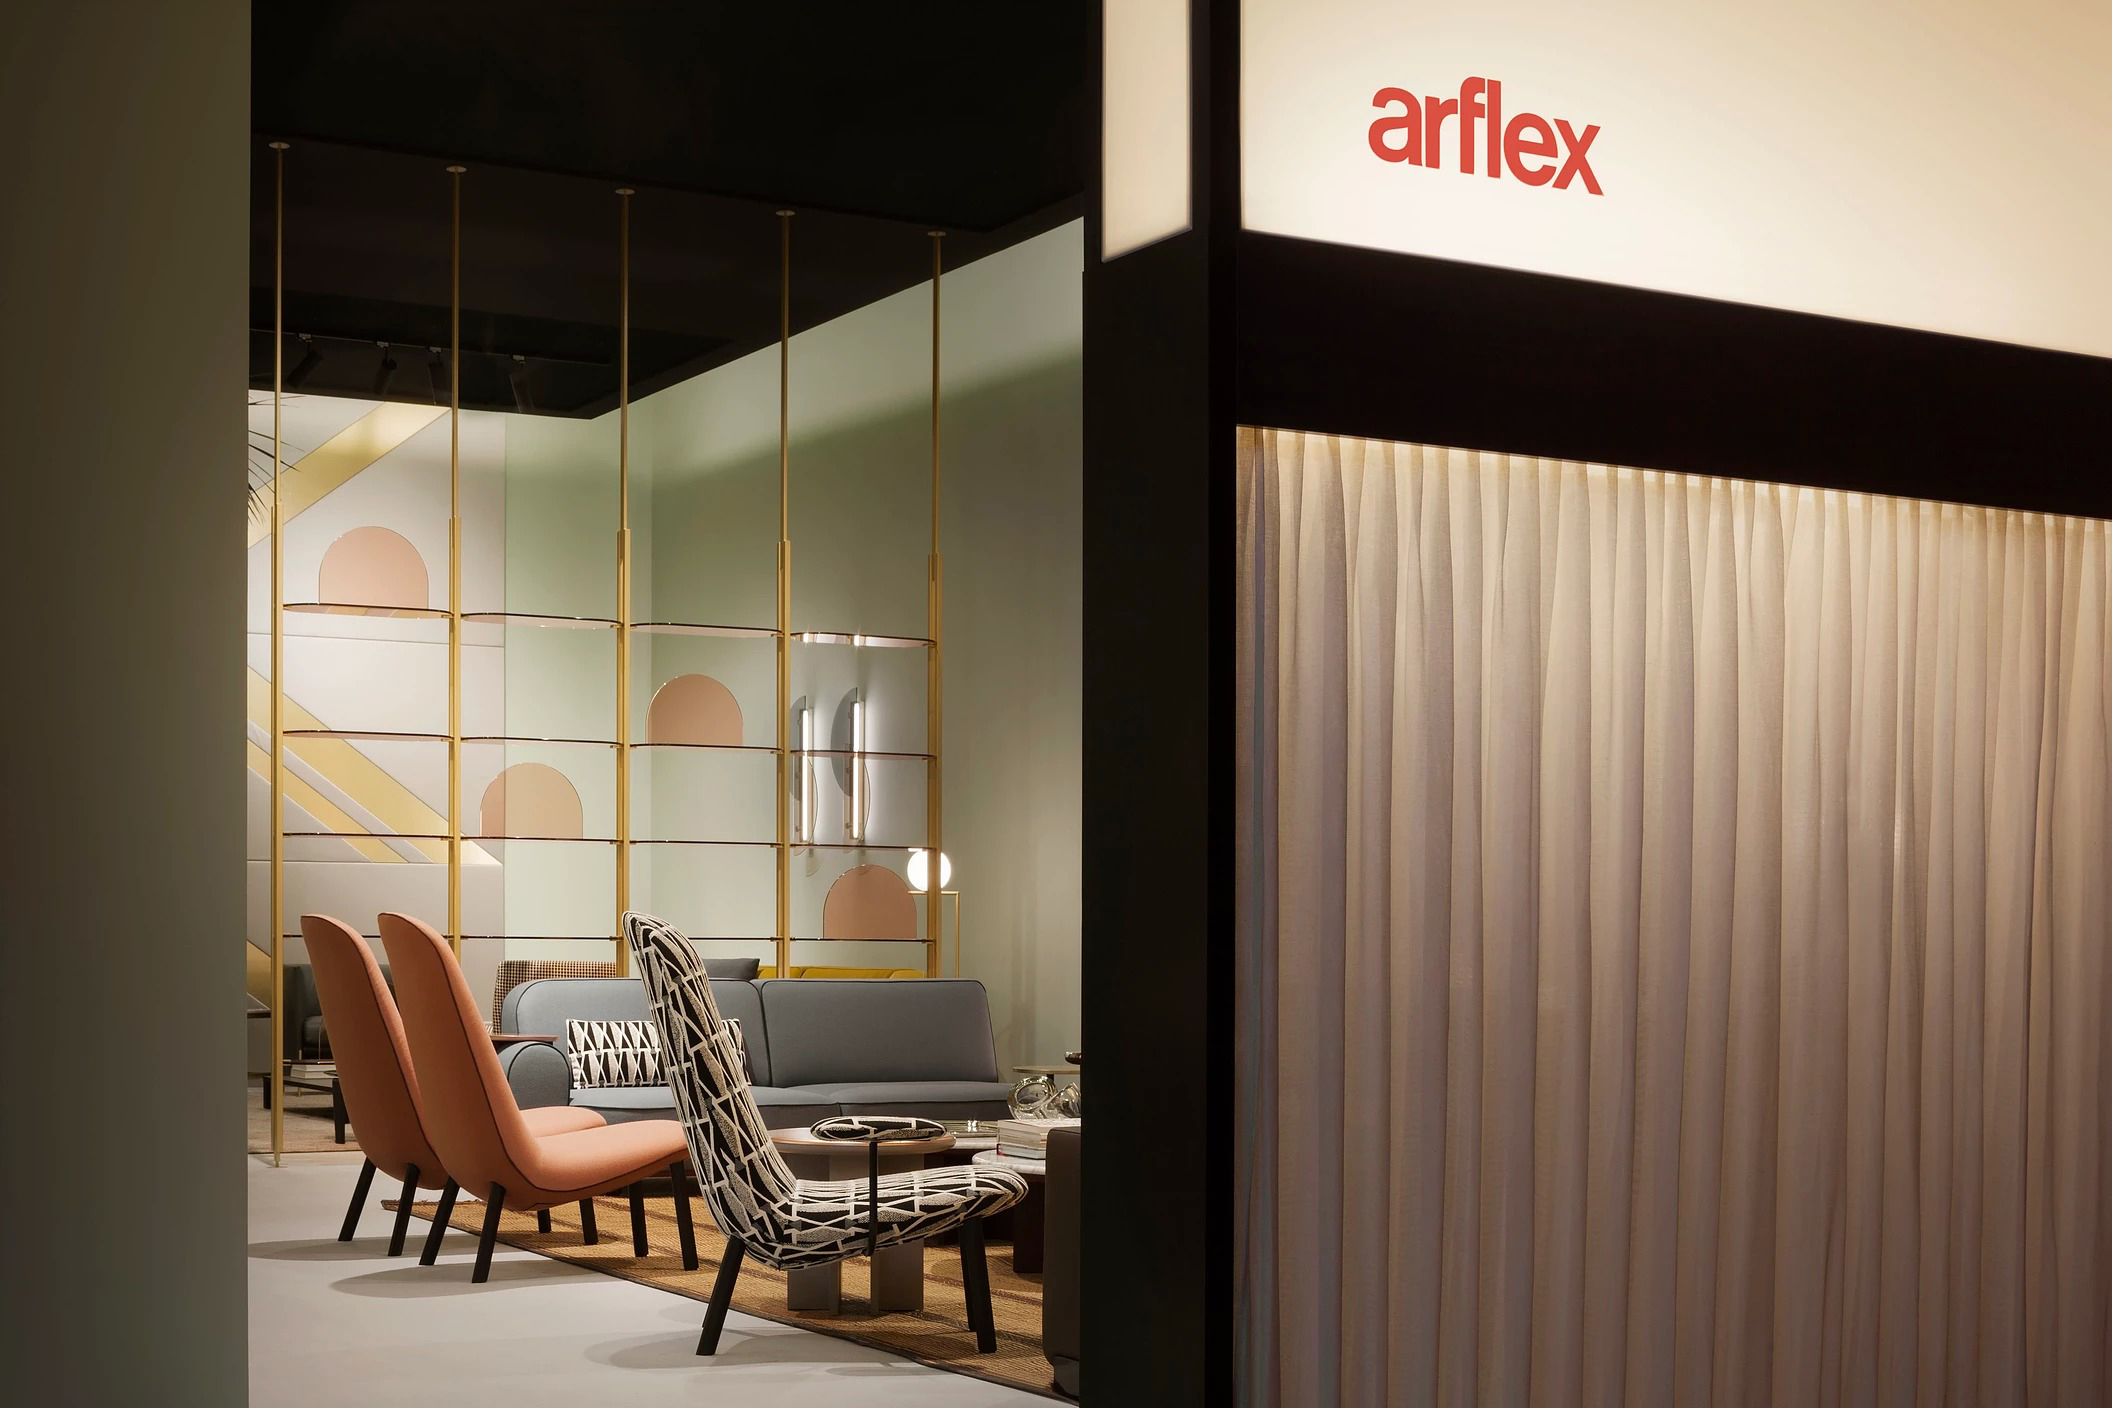 Arflex, Salone del mobile  Project: Bernhardt & Vella